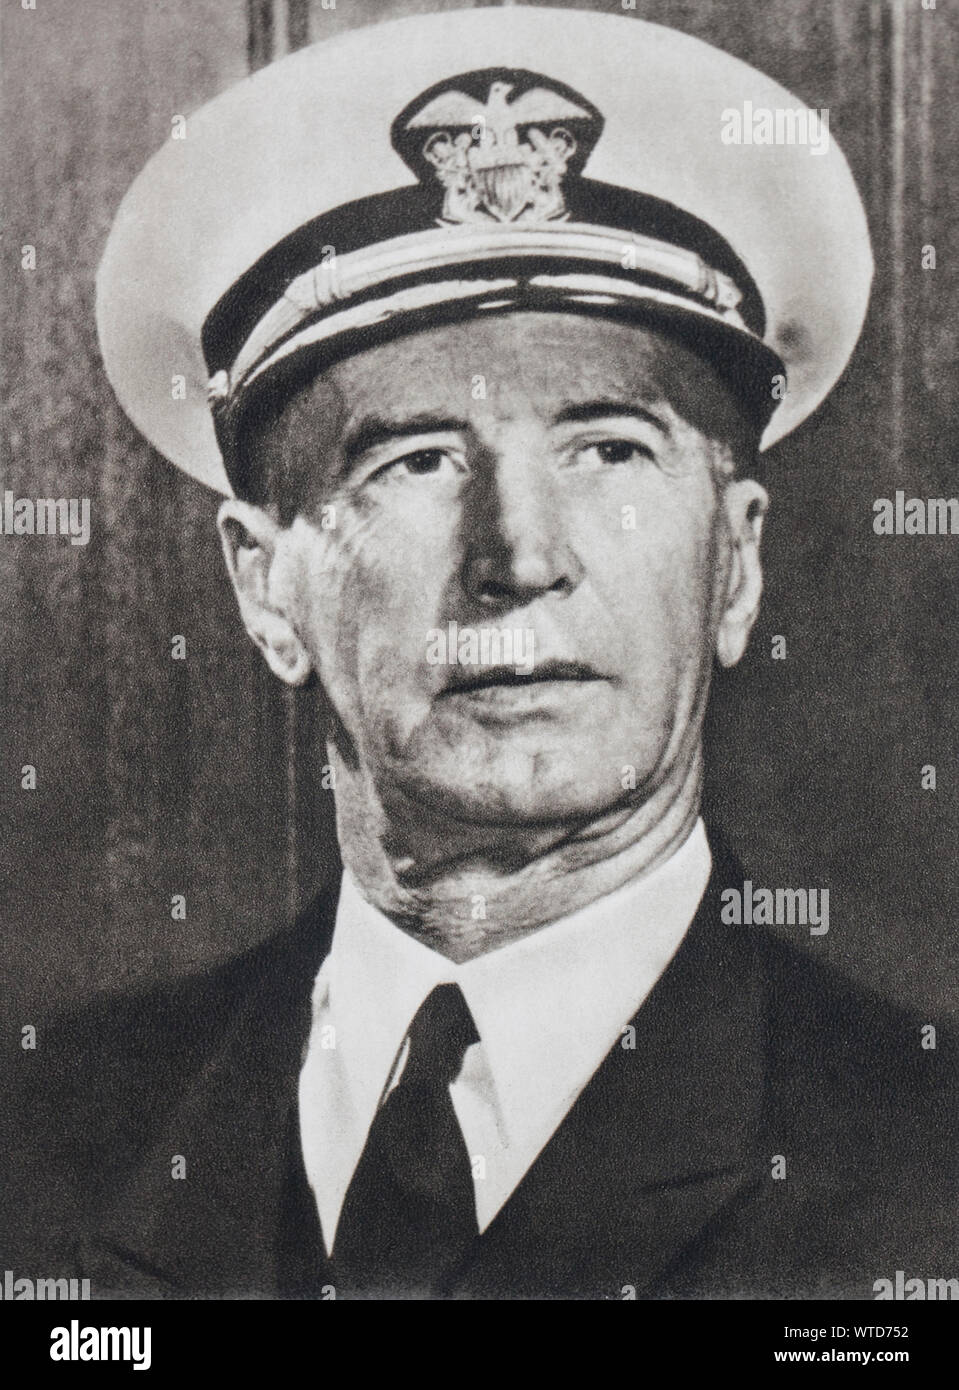 L'amiral Ernest King (1878 - 1956) était commandant en chef, United States fleet (COMINCH) et chef des opérations navales (ONC) durant la Seconde Guerre mondiale. Banque D'Images